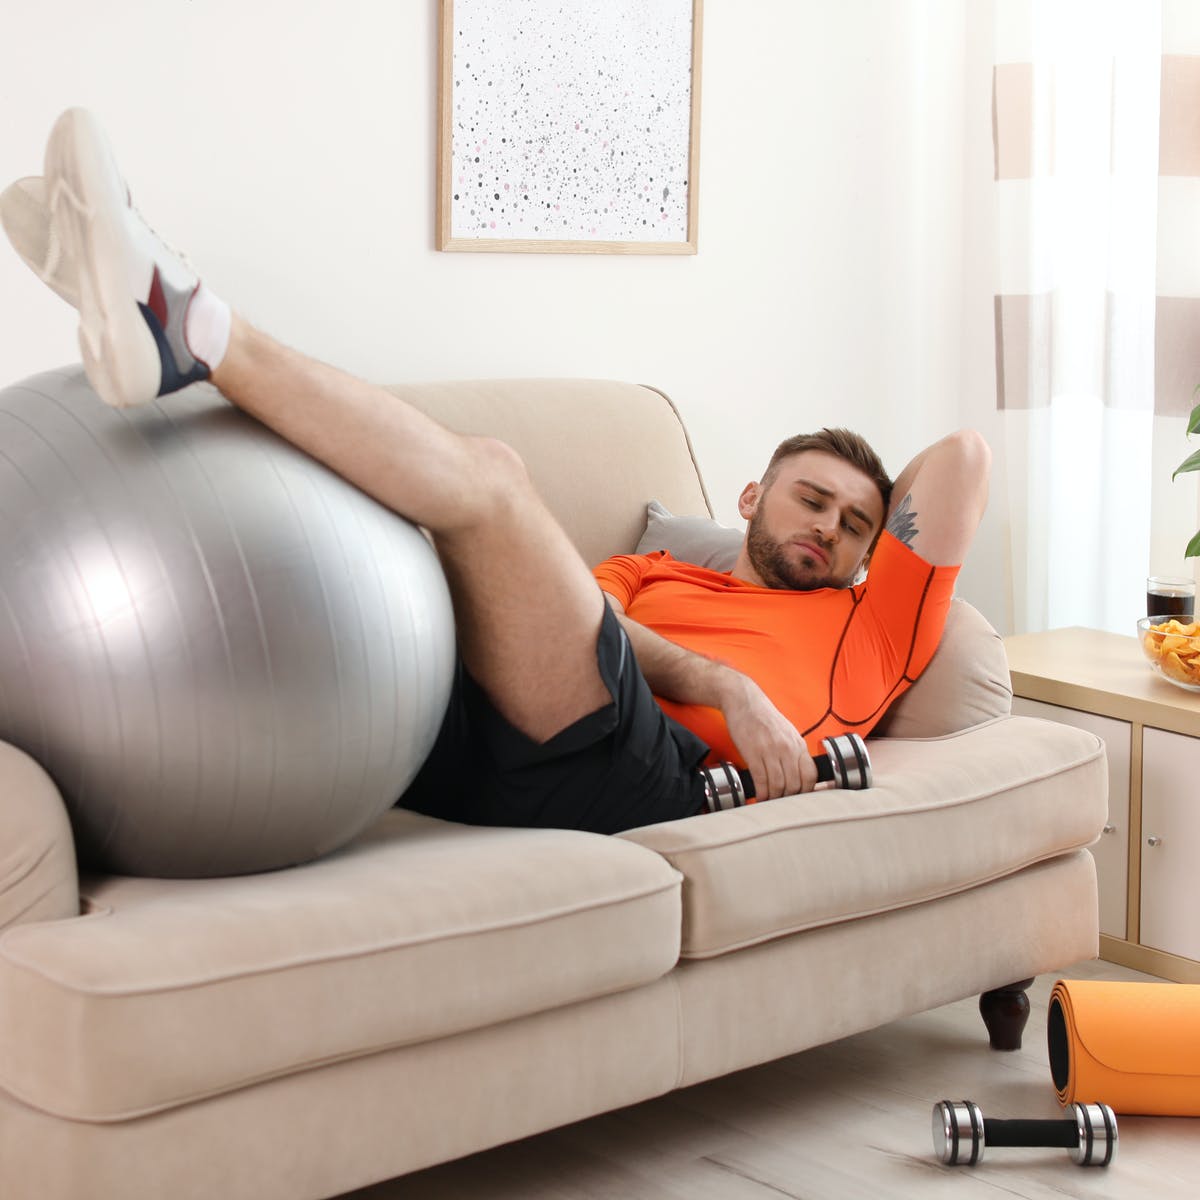 Mất động lực tập thể dục tại nhà? 6 cách sau đây sẽ giúp bạn nhấc mông khỏi giường và lao vào tập luyện